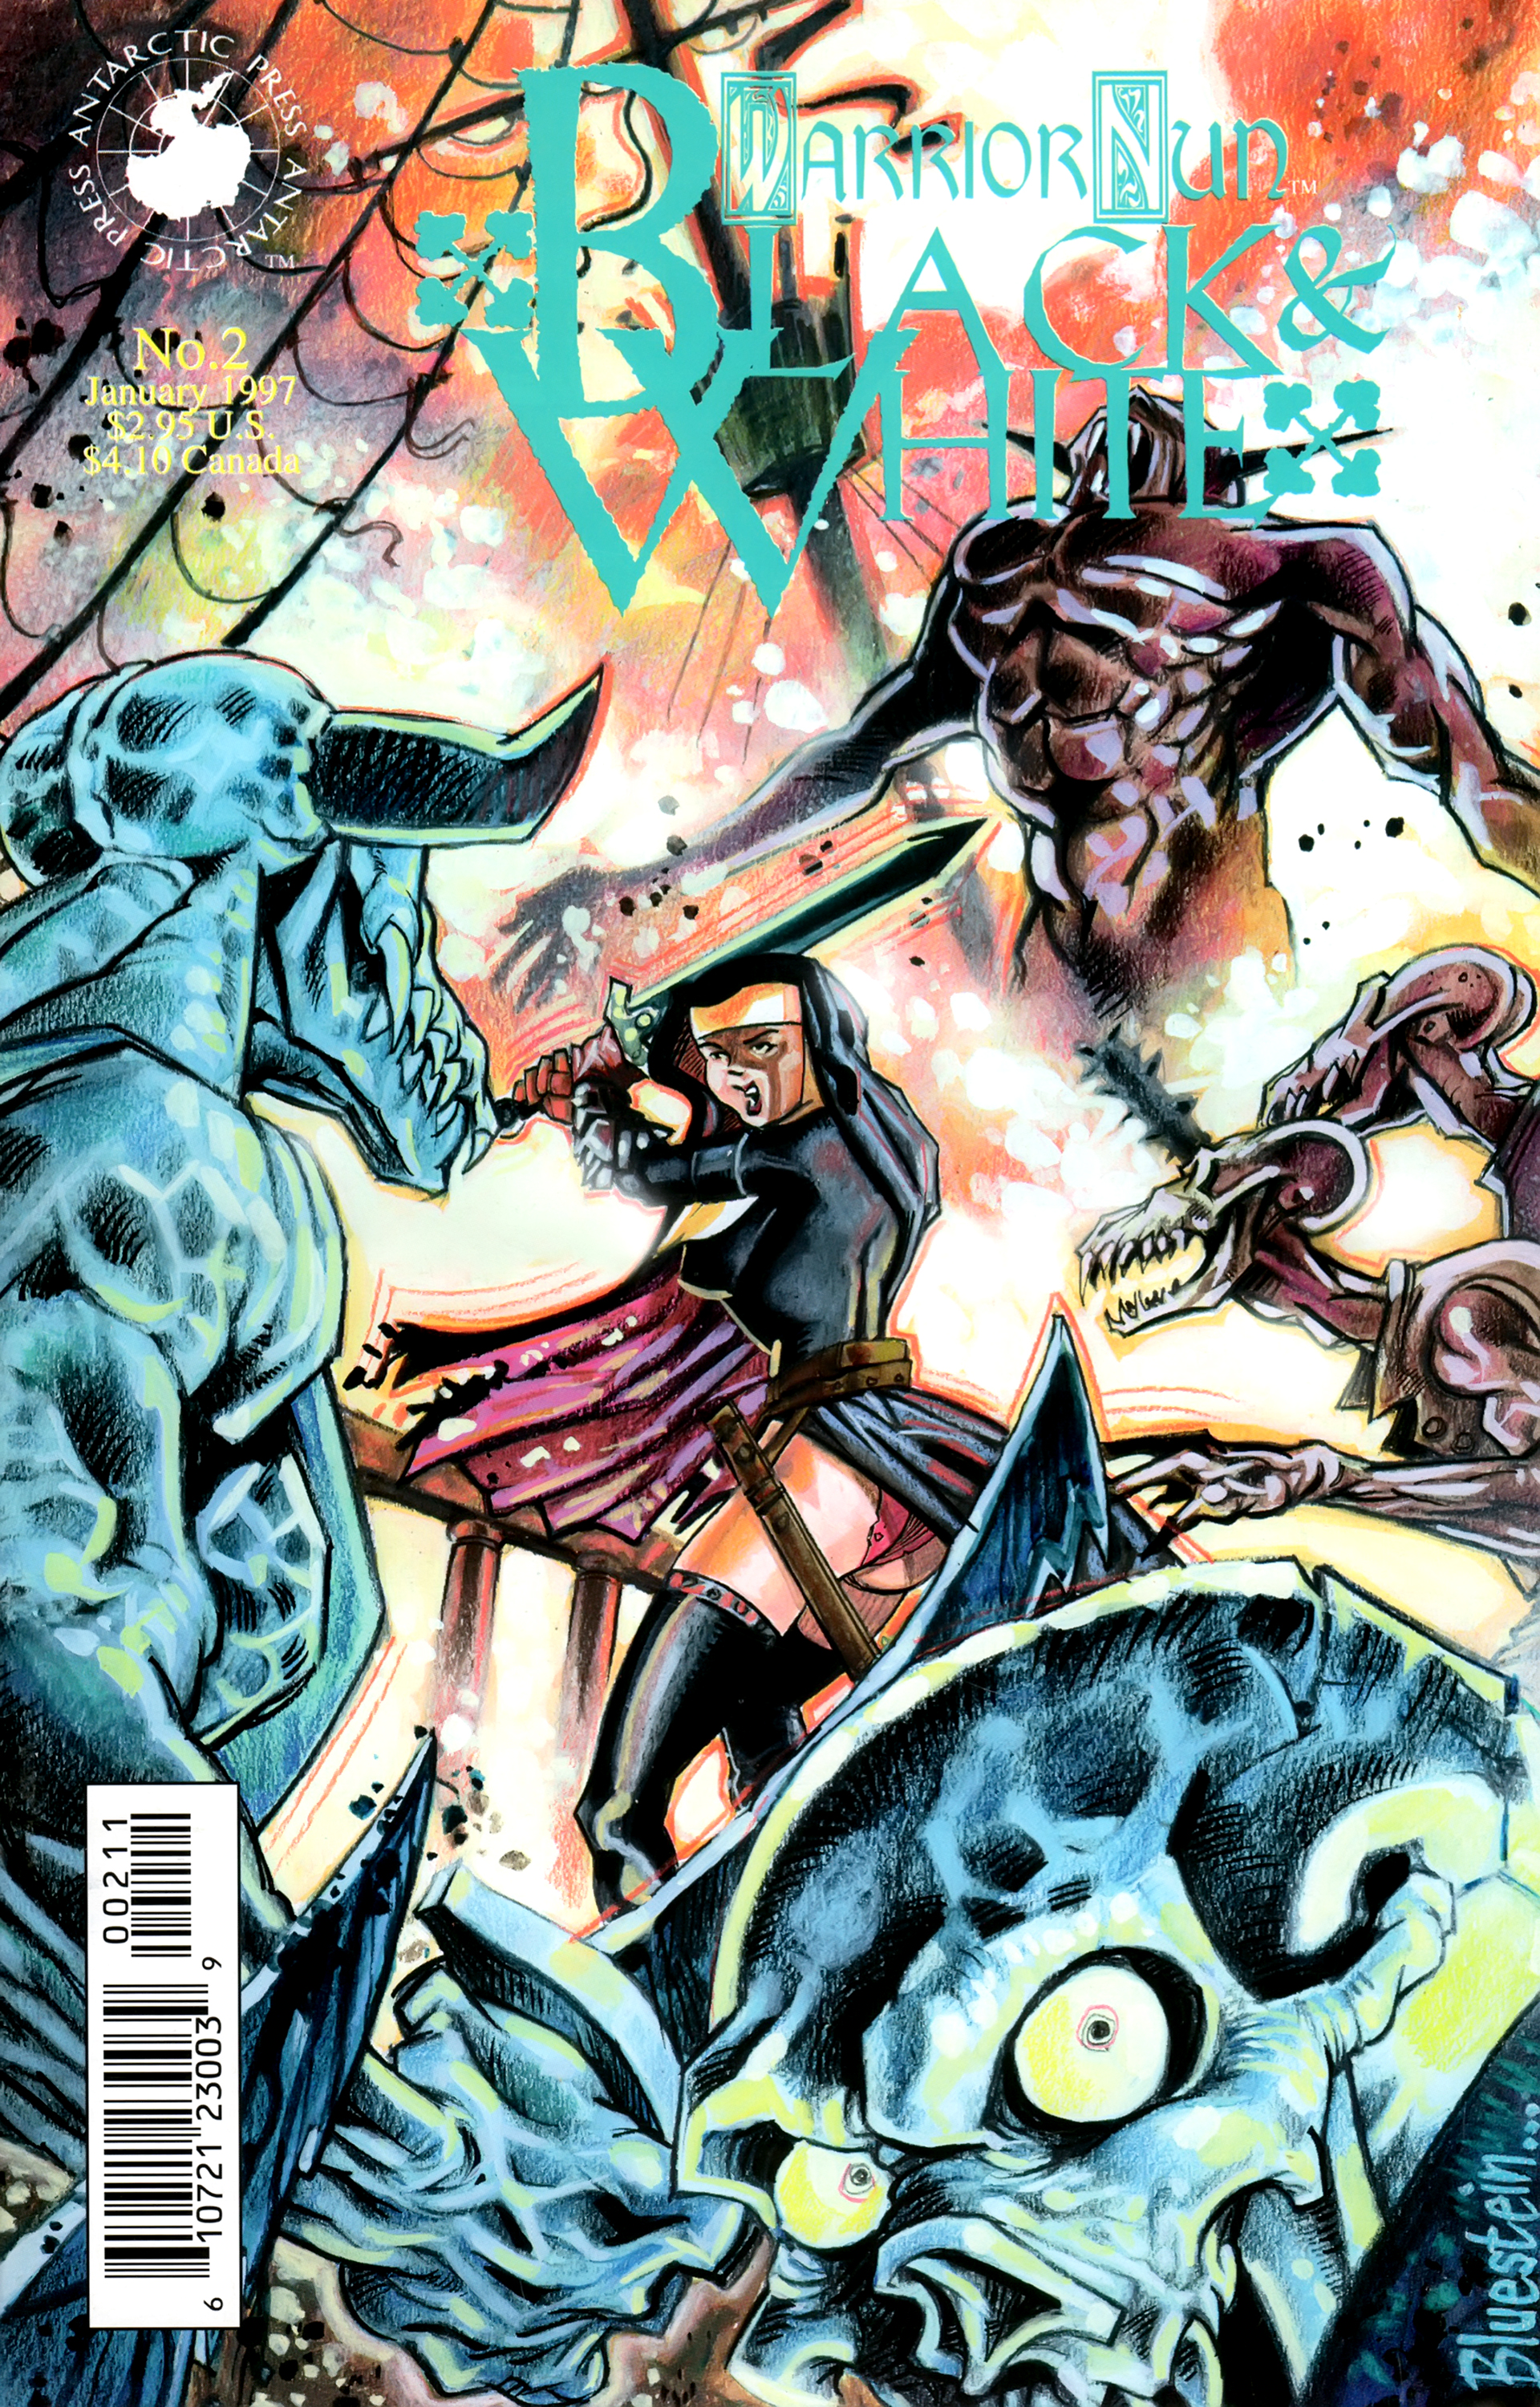 Read online Warrior Nun: Black & White comic -  Issue #2 - 1